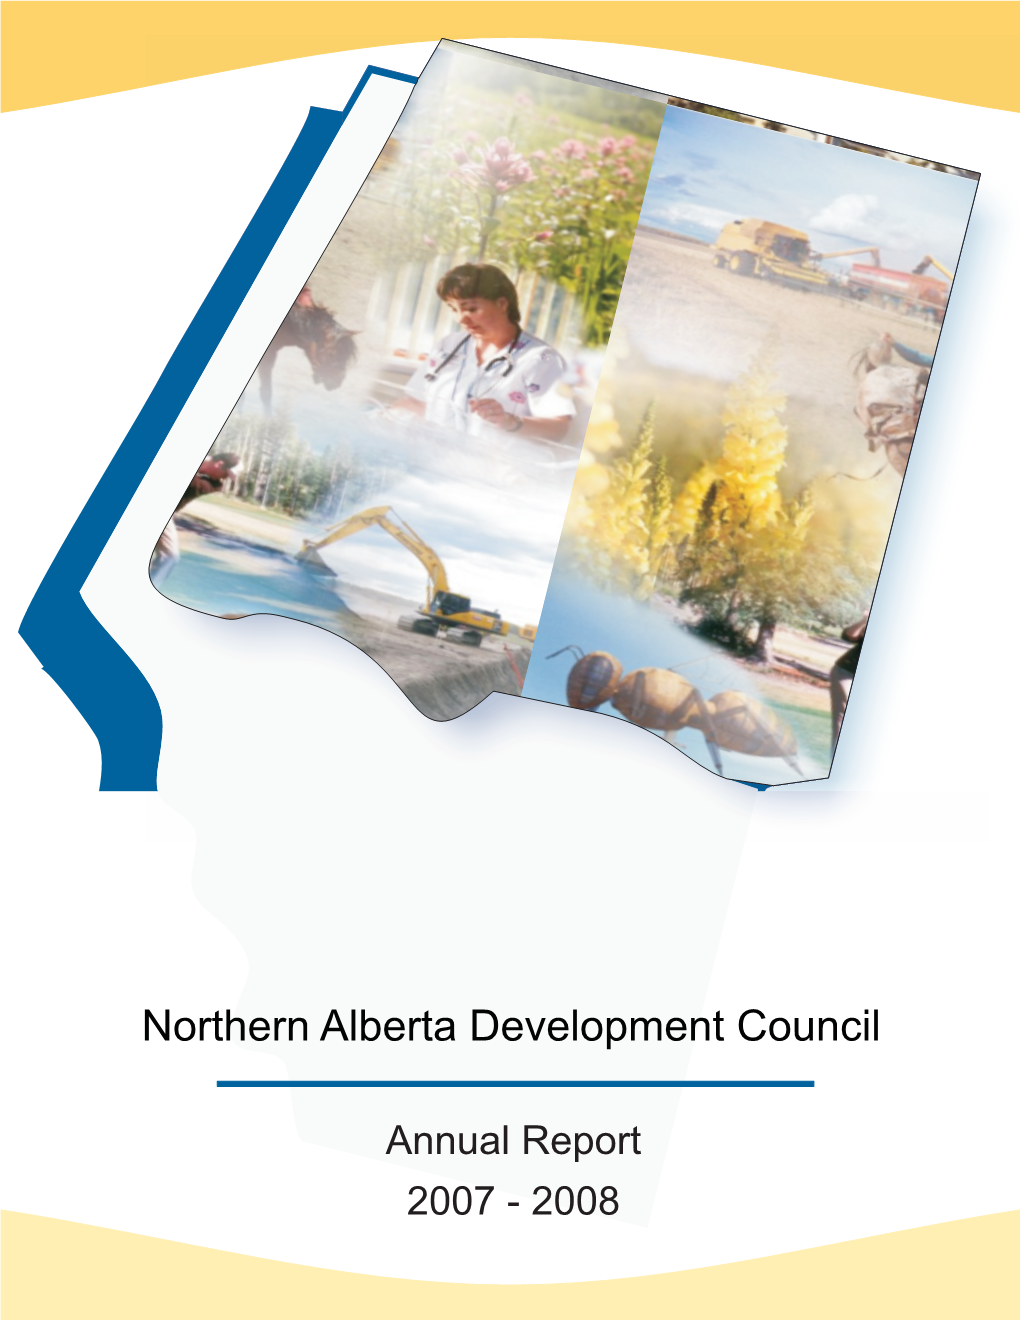 Northern Alberta Development Council Annual Report 2007-2008